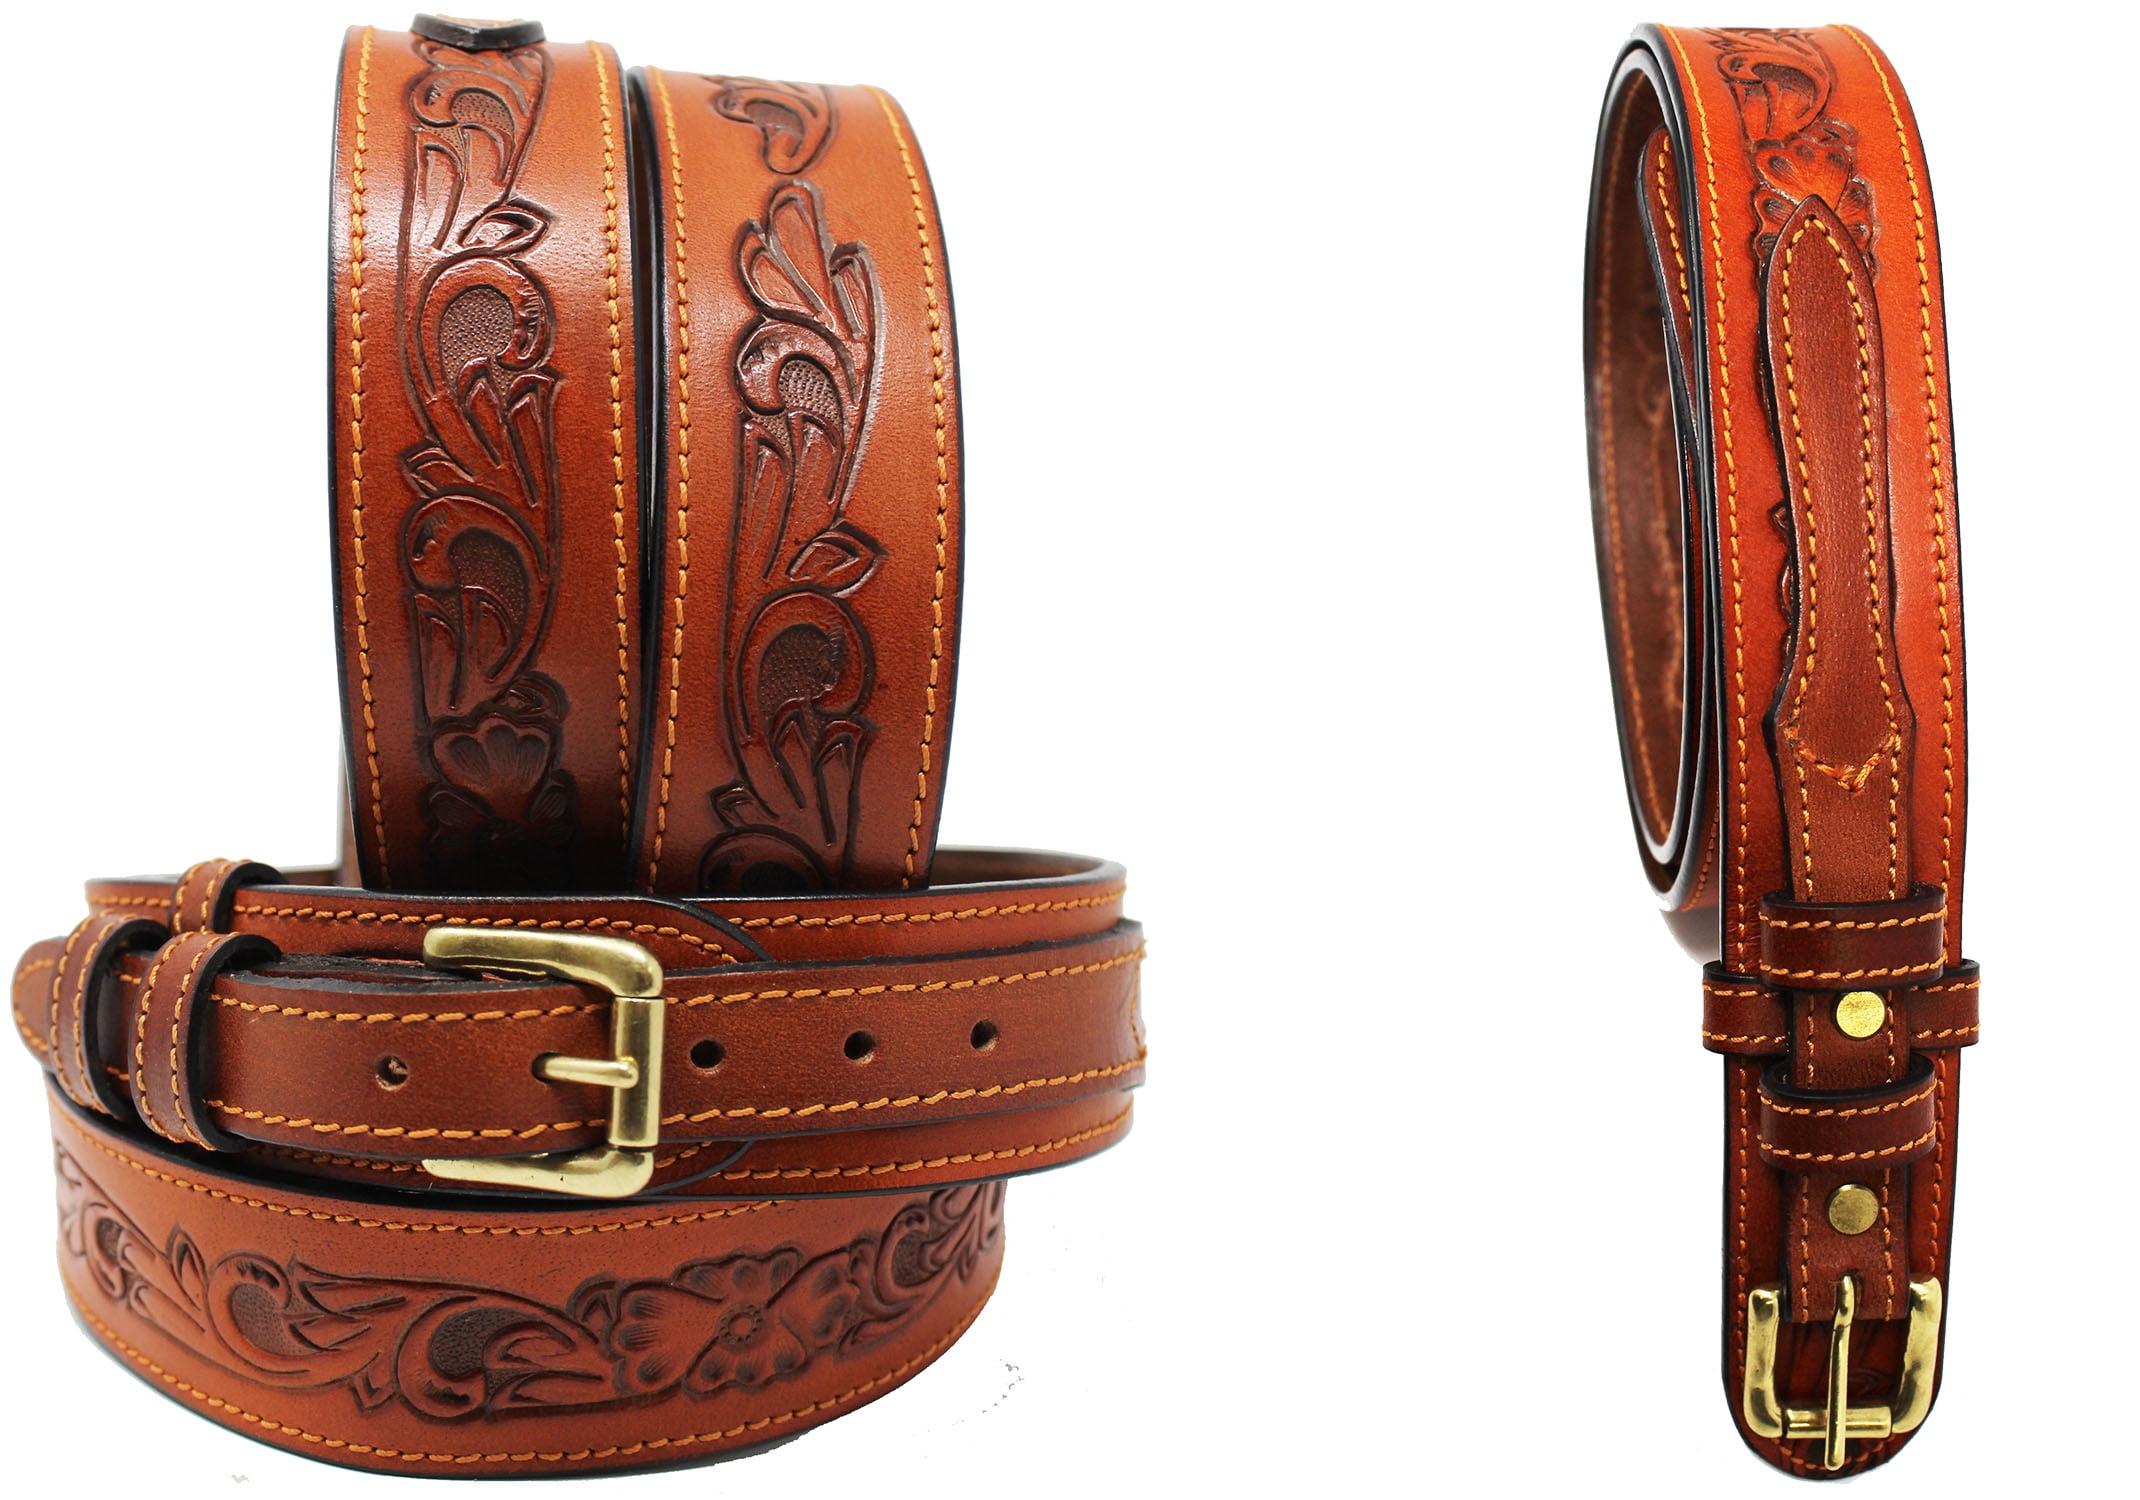 Custom Made Leather Ranger Belts